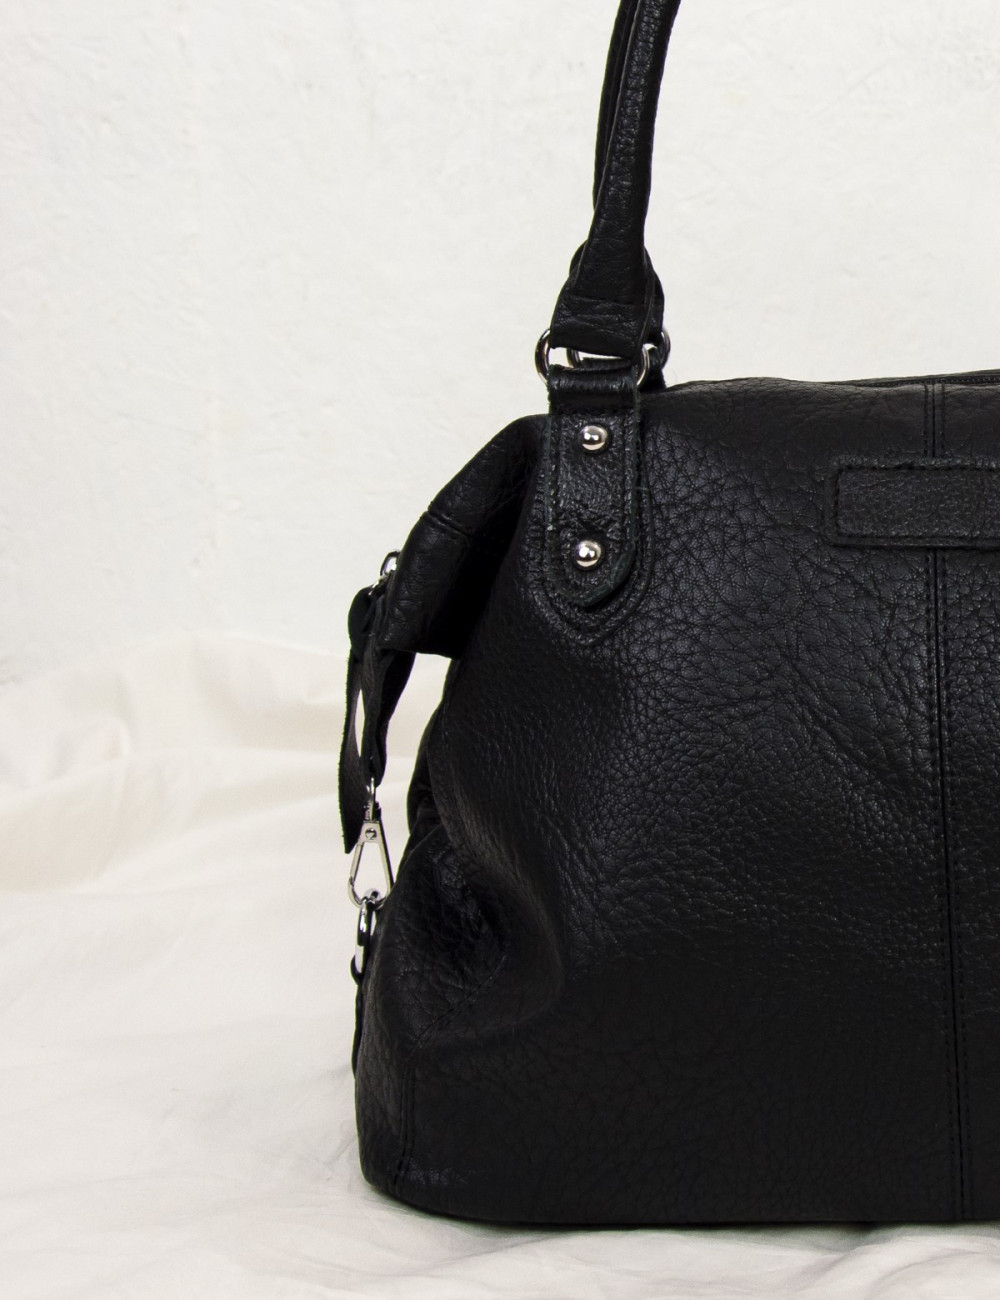 Γυναικεία μαύρη τσάντα ώμου με διχρωμία PB712